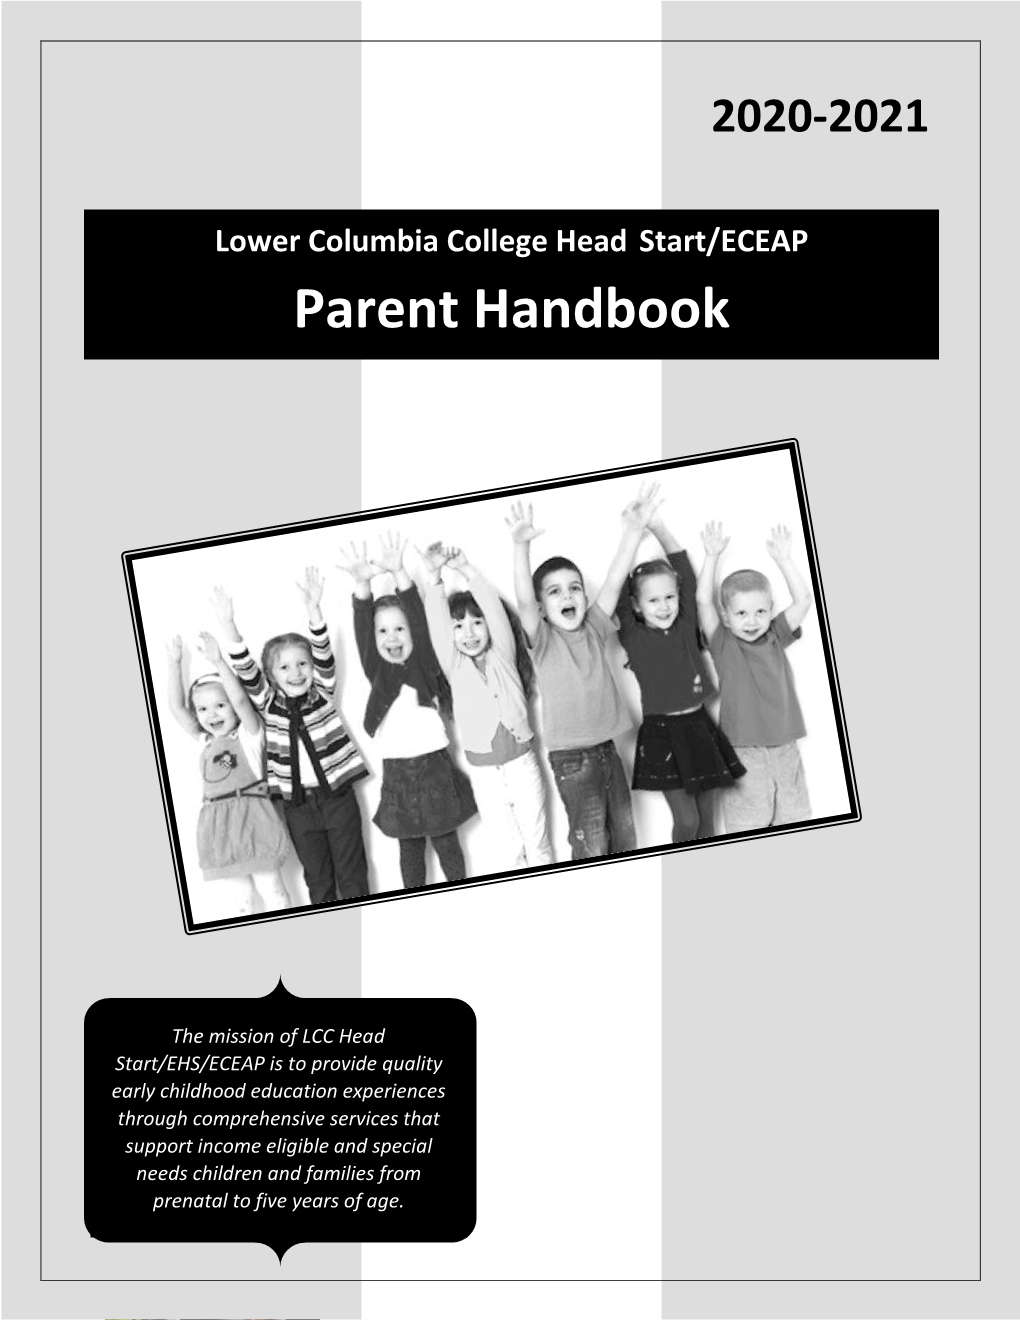 Lower Columbia College Head Start/ECEAP Parent Handbook